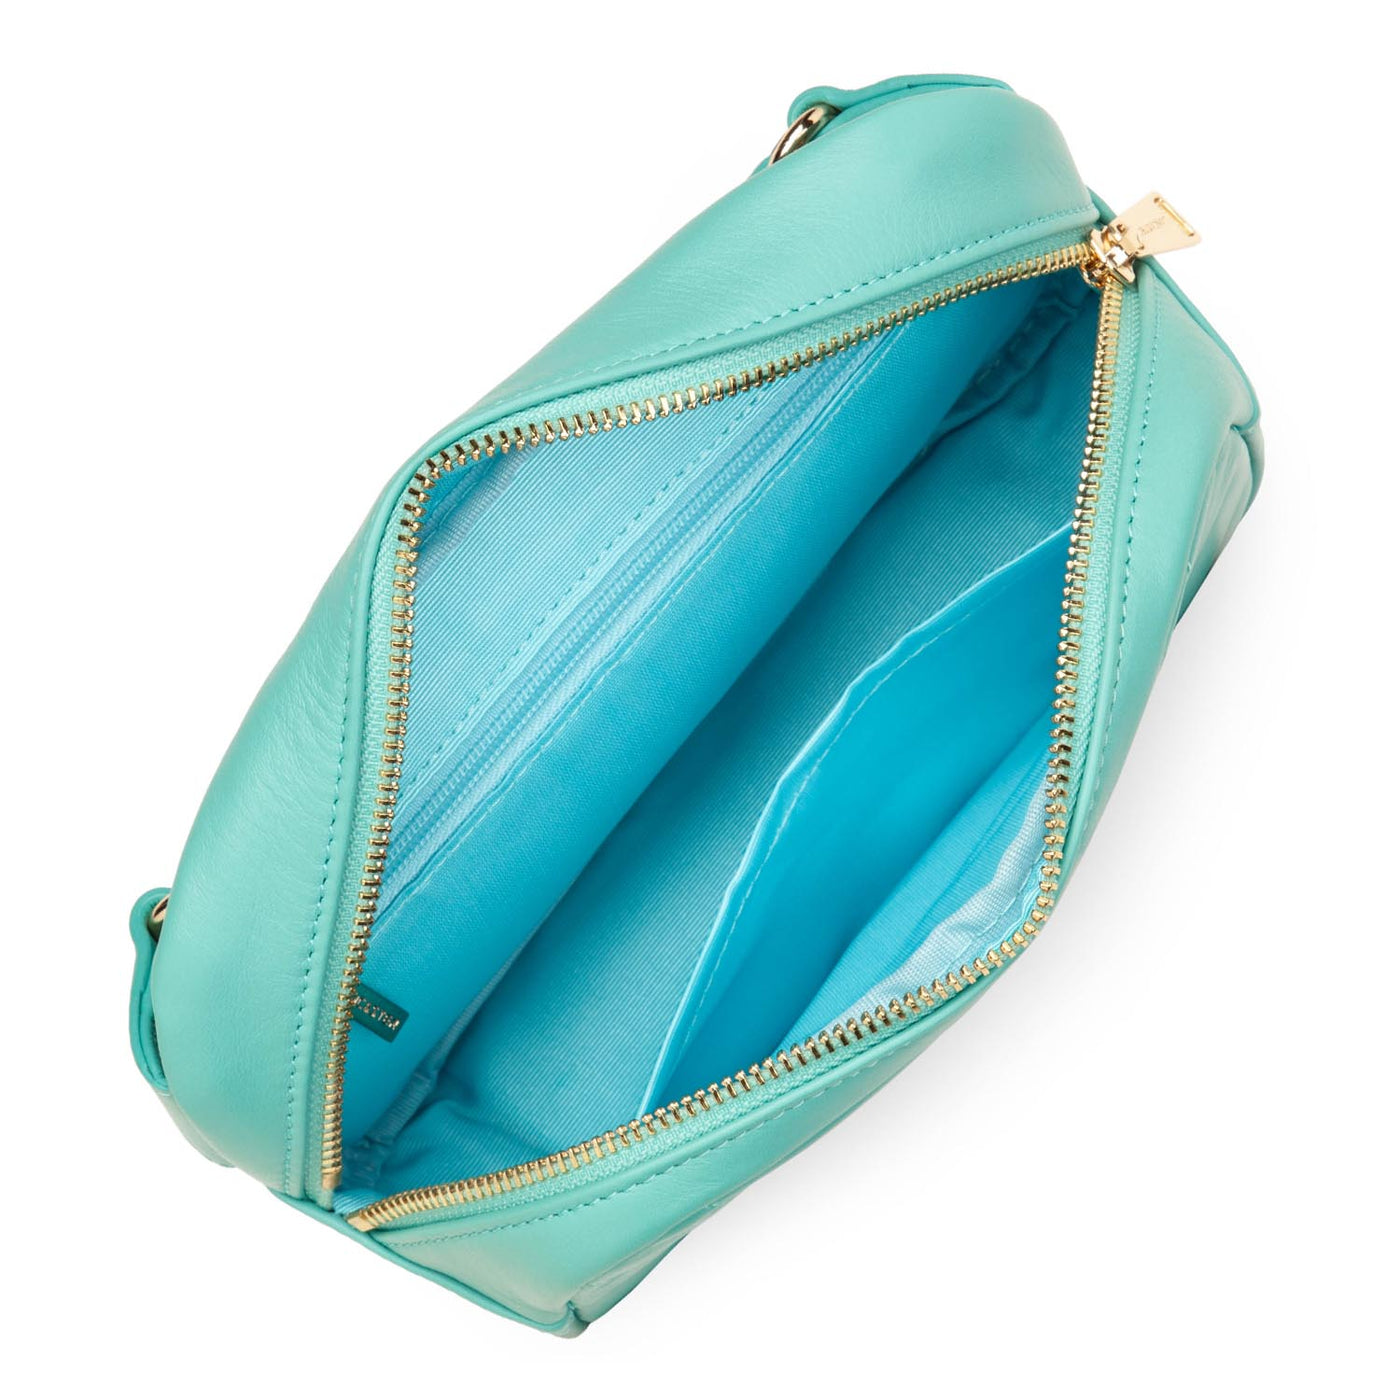 belt bag - soft matelassé #couleur_lagon